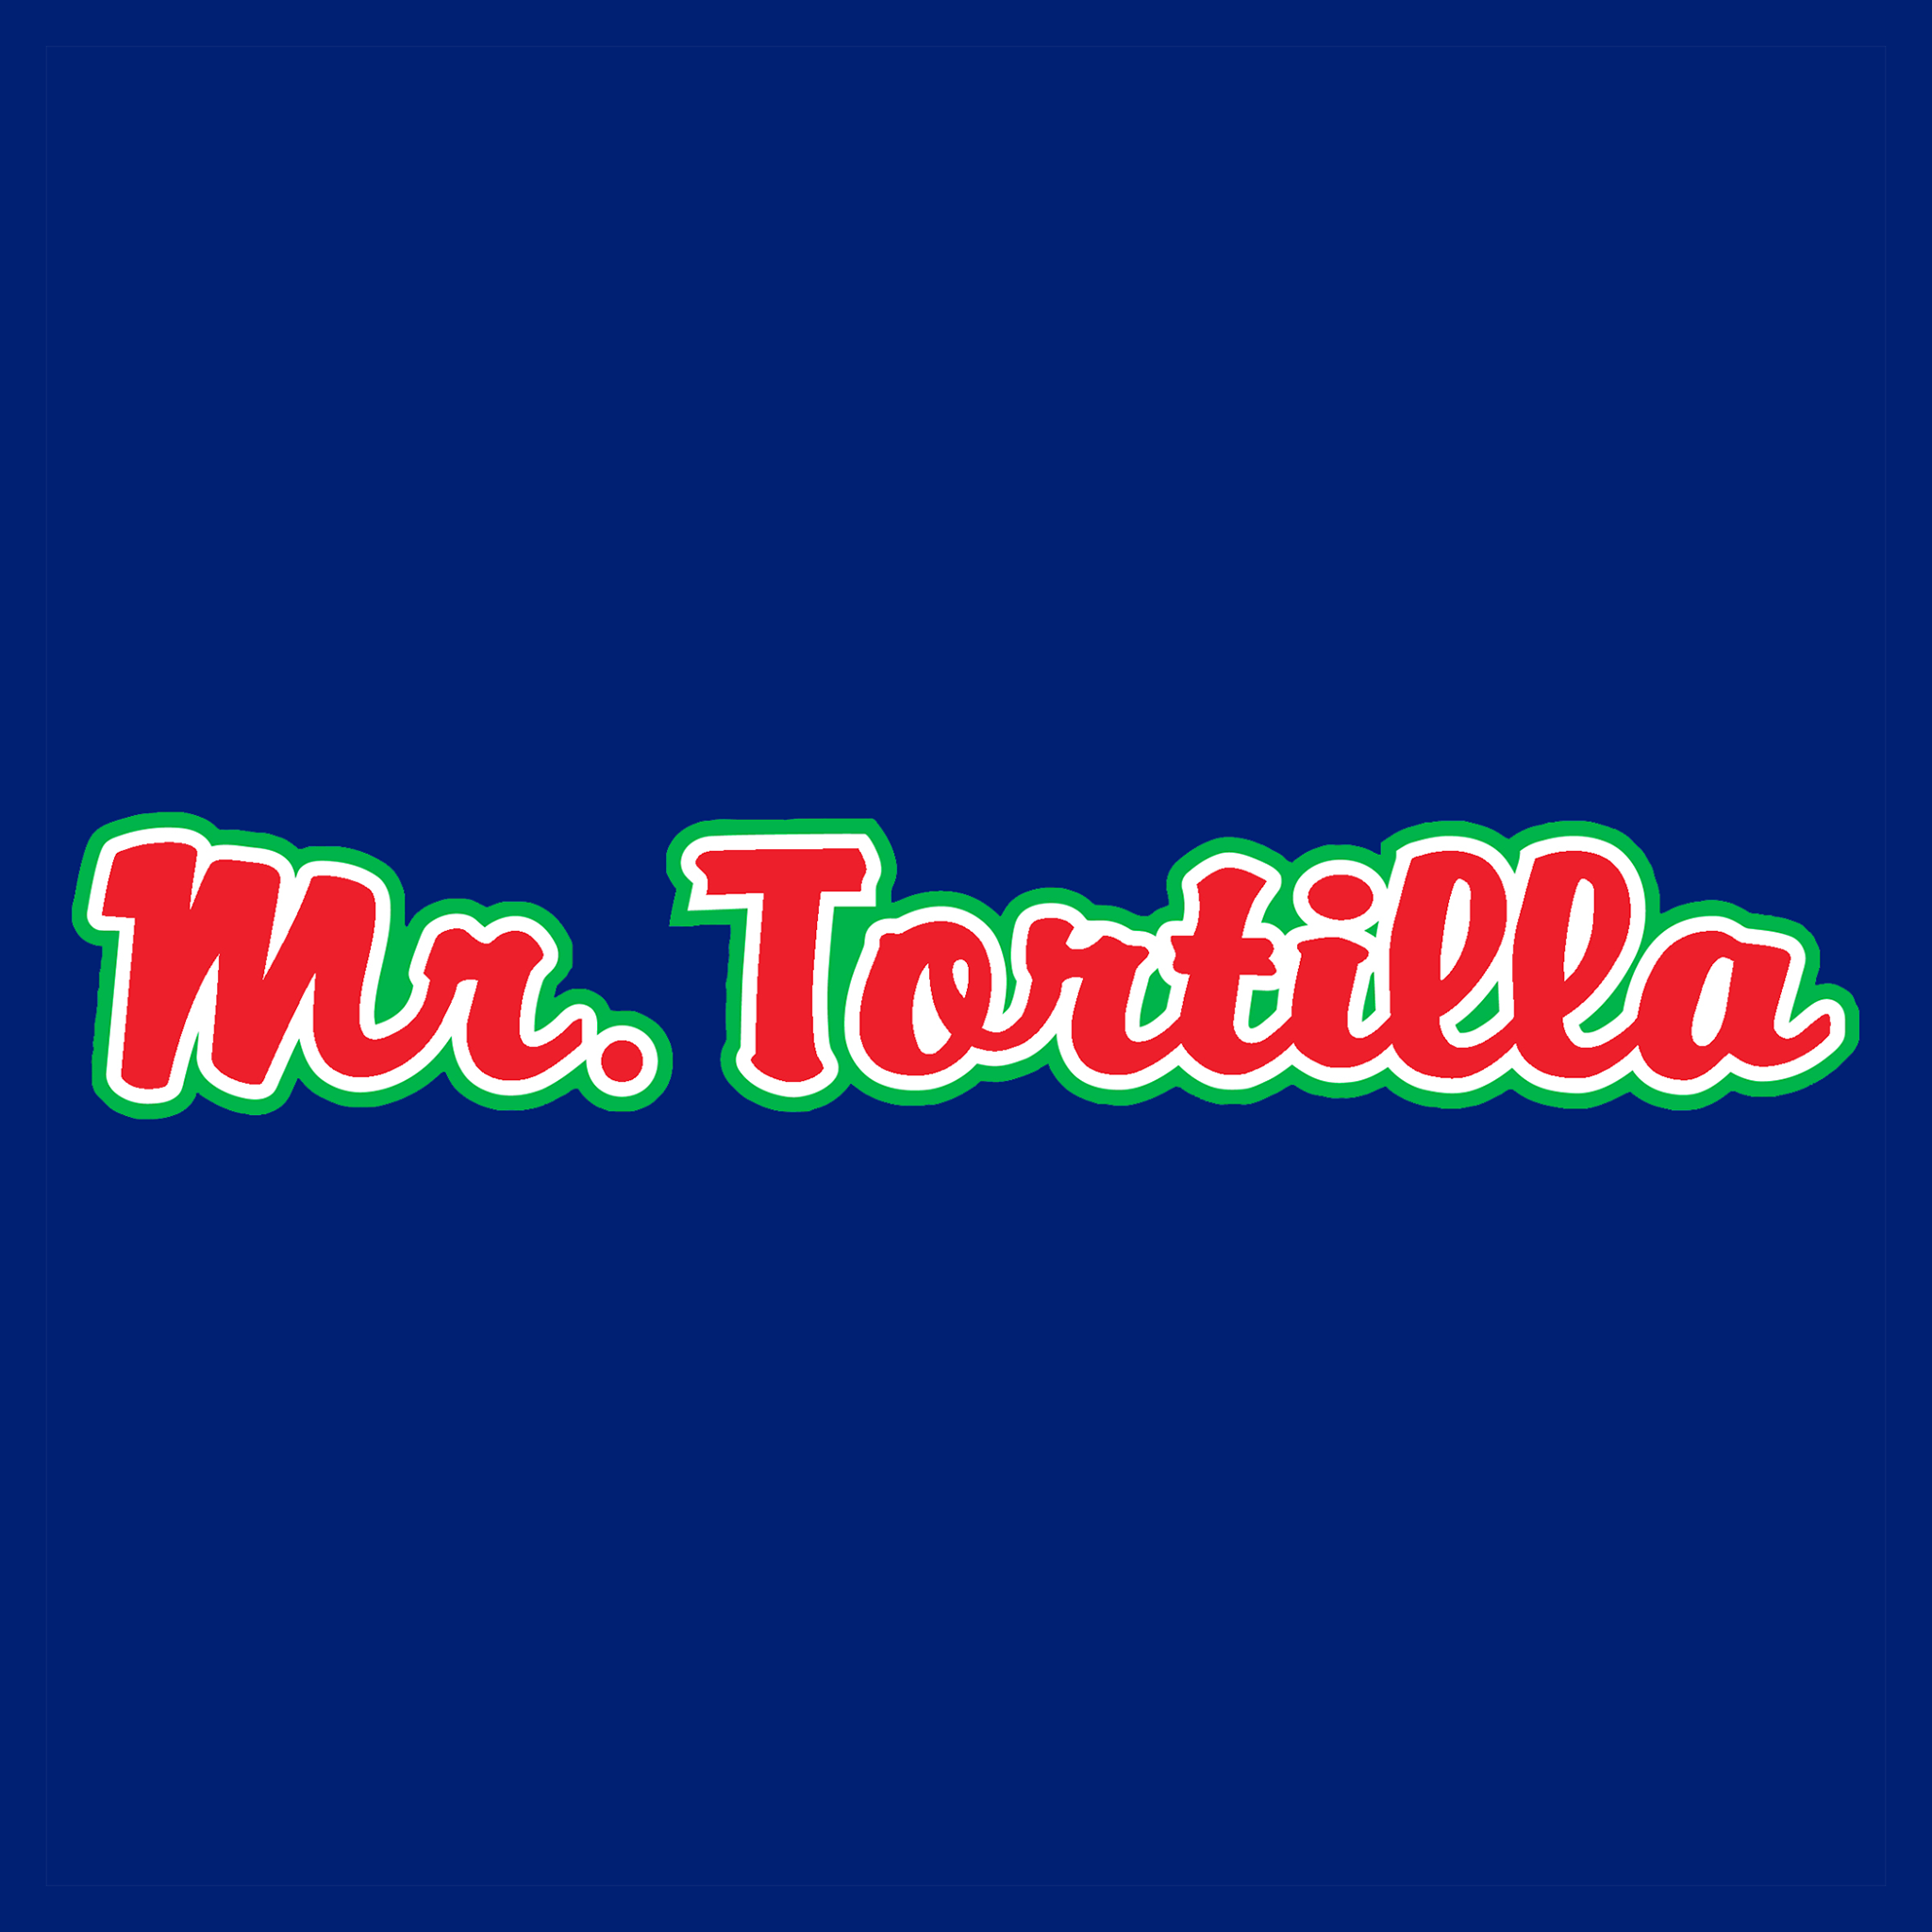 Mr Tortilla